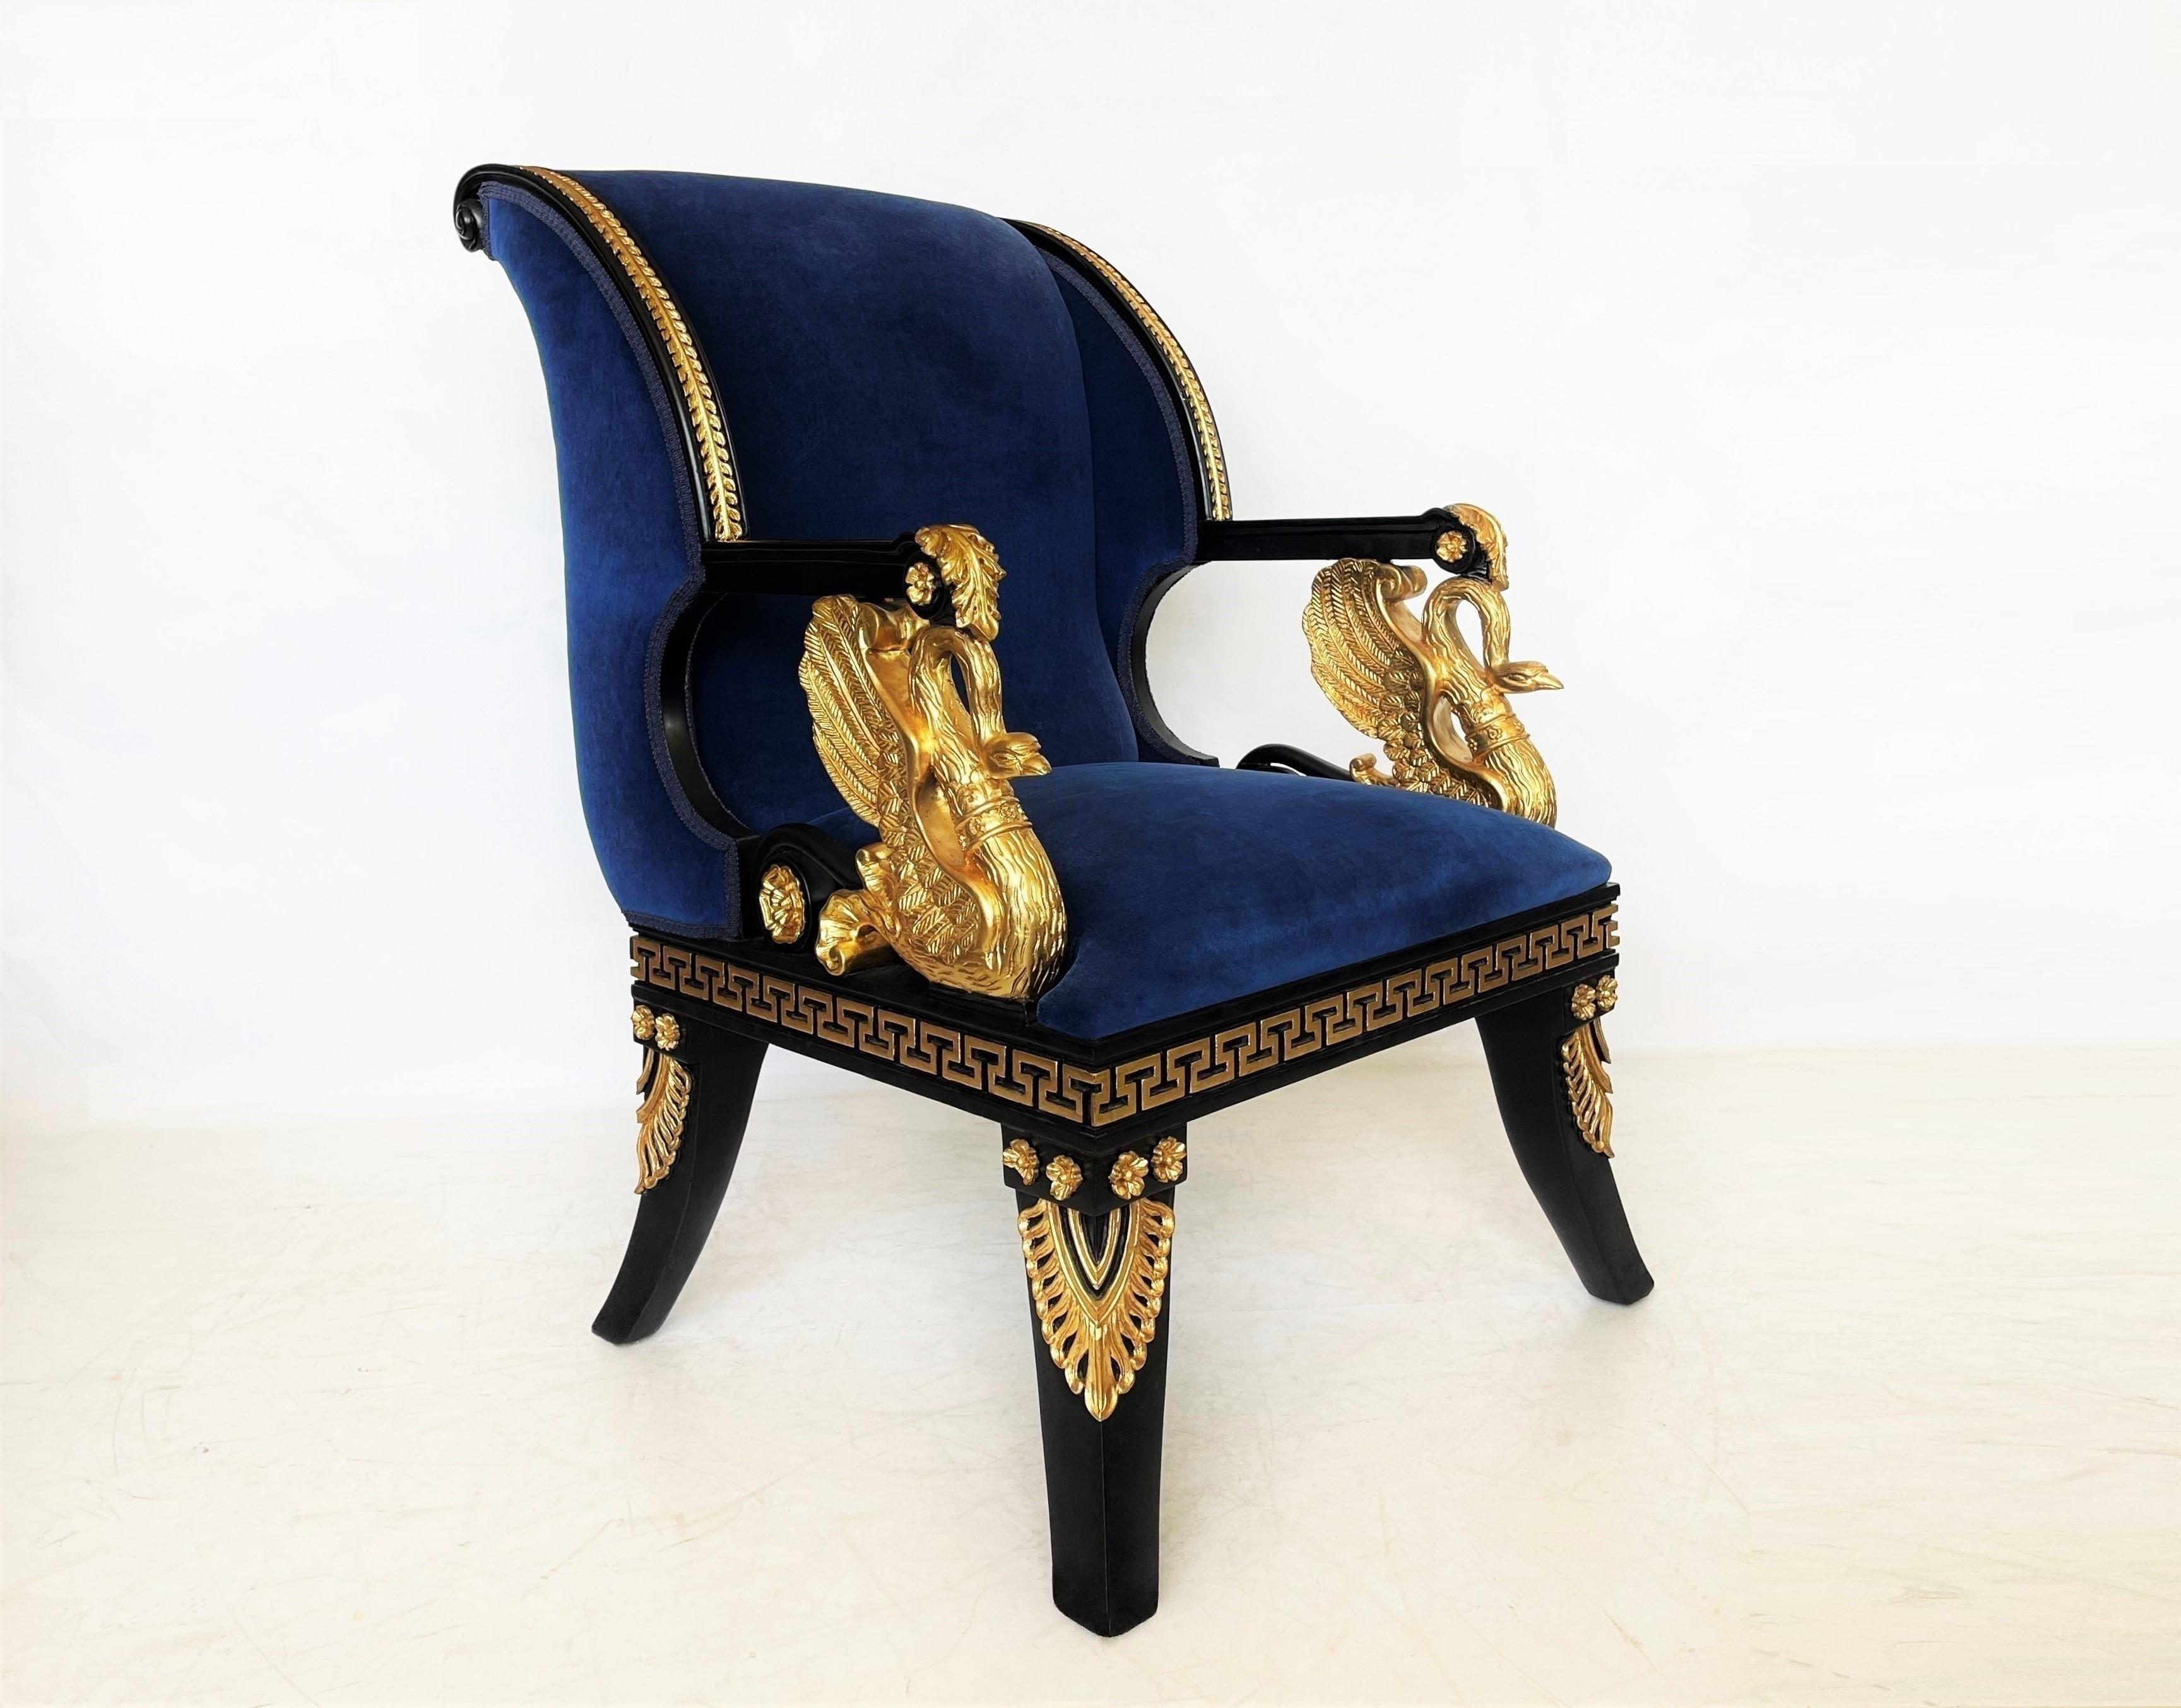 Dieses elegante Paar offener Sessel spiegelt das Werk des exzentrischen Klassizisten Thomas Hope wider, indem es griechische und römische Formen zu einem kühnen Ausdruck des Neoklassizismus adaptiert. Fachmännisch restaurierte Stühle in